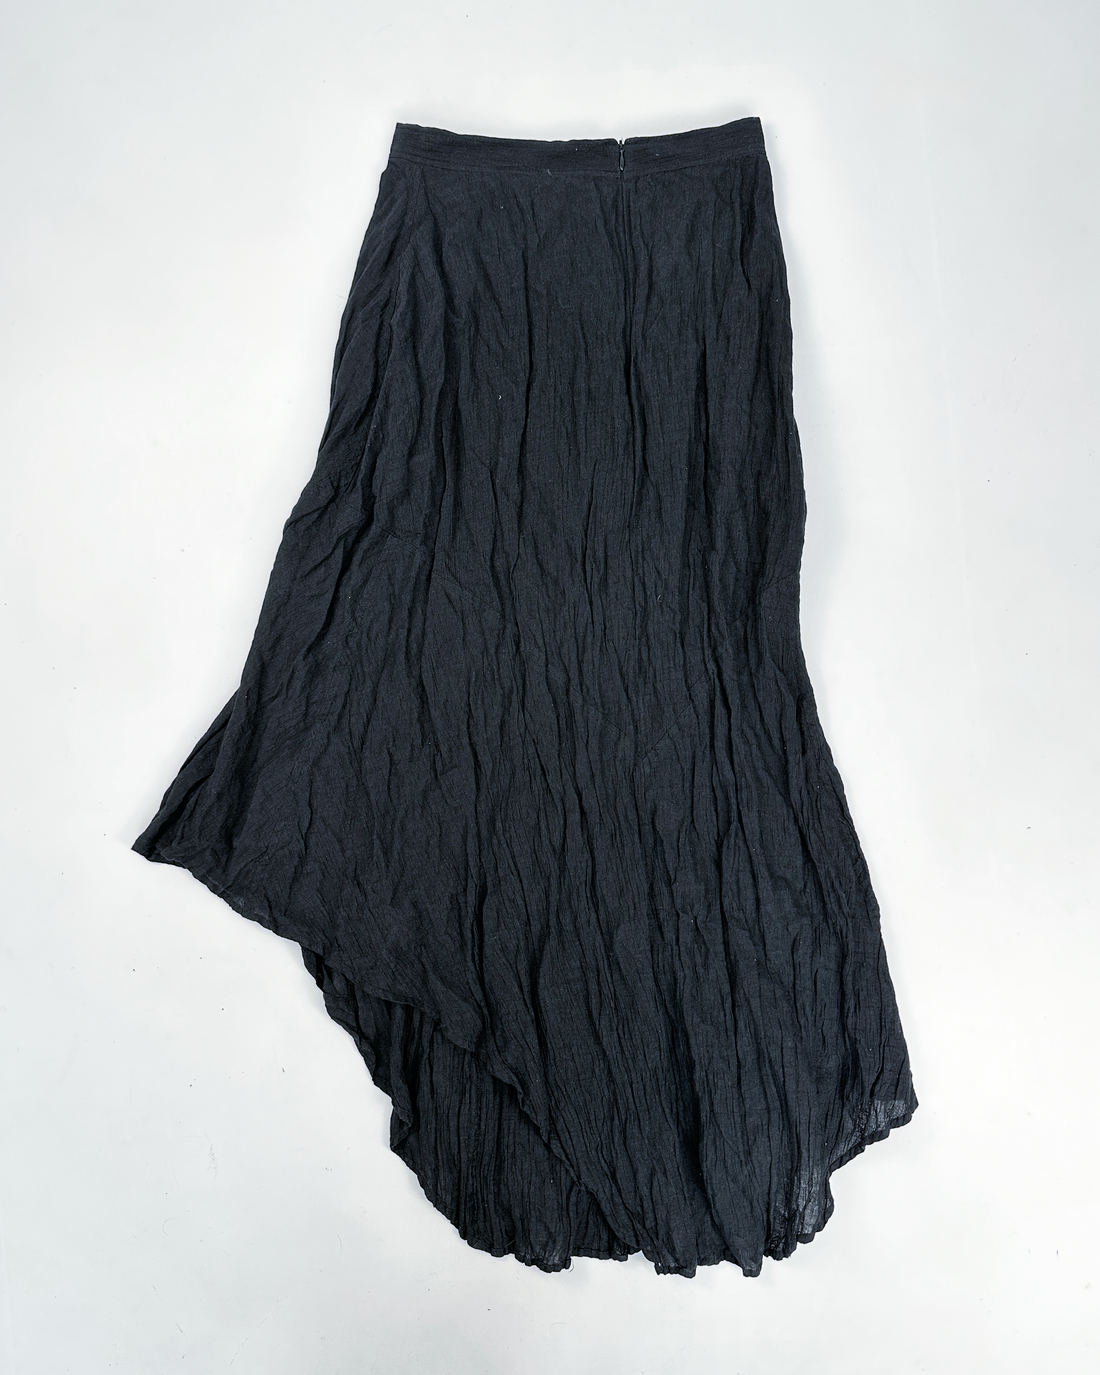 Nathalie Garçon Black Textured Skirt 2000's